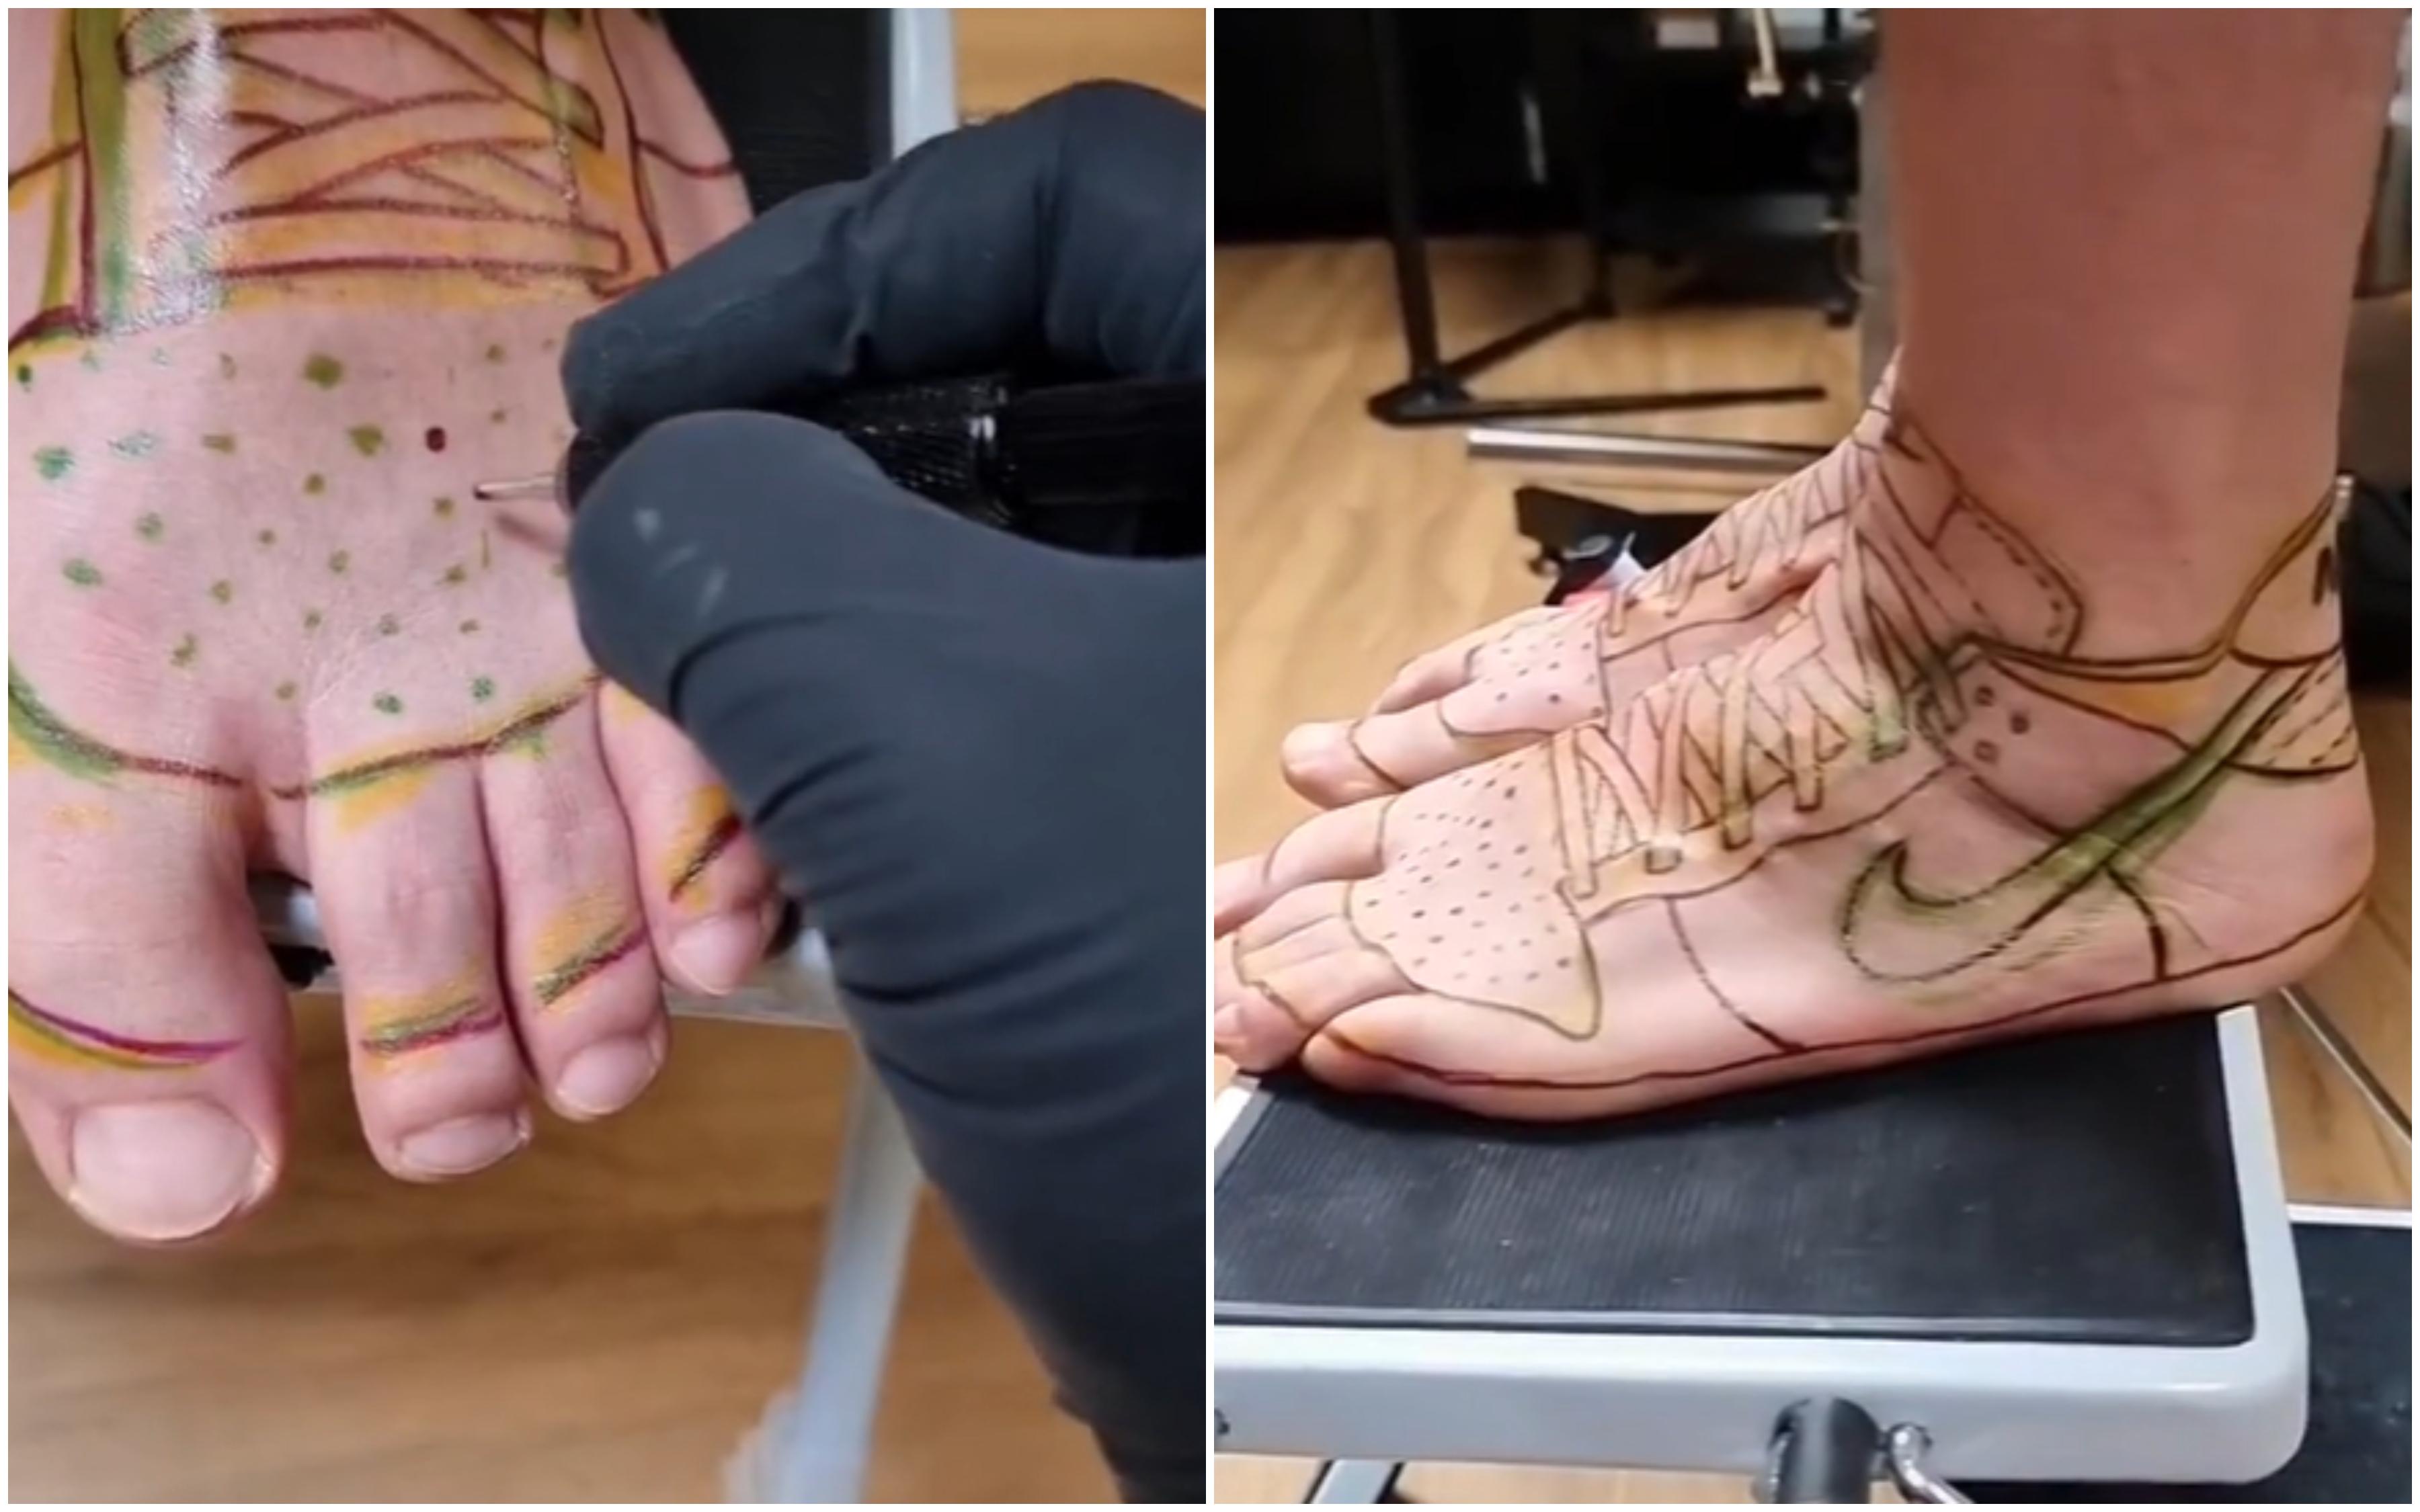 Muškarac istetovirao Nike patike na stopala jer mu je dosadilo kupovati nove